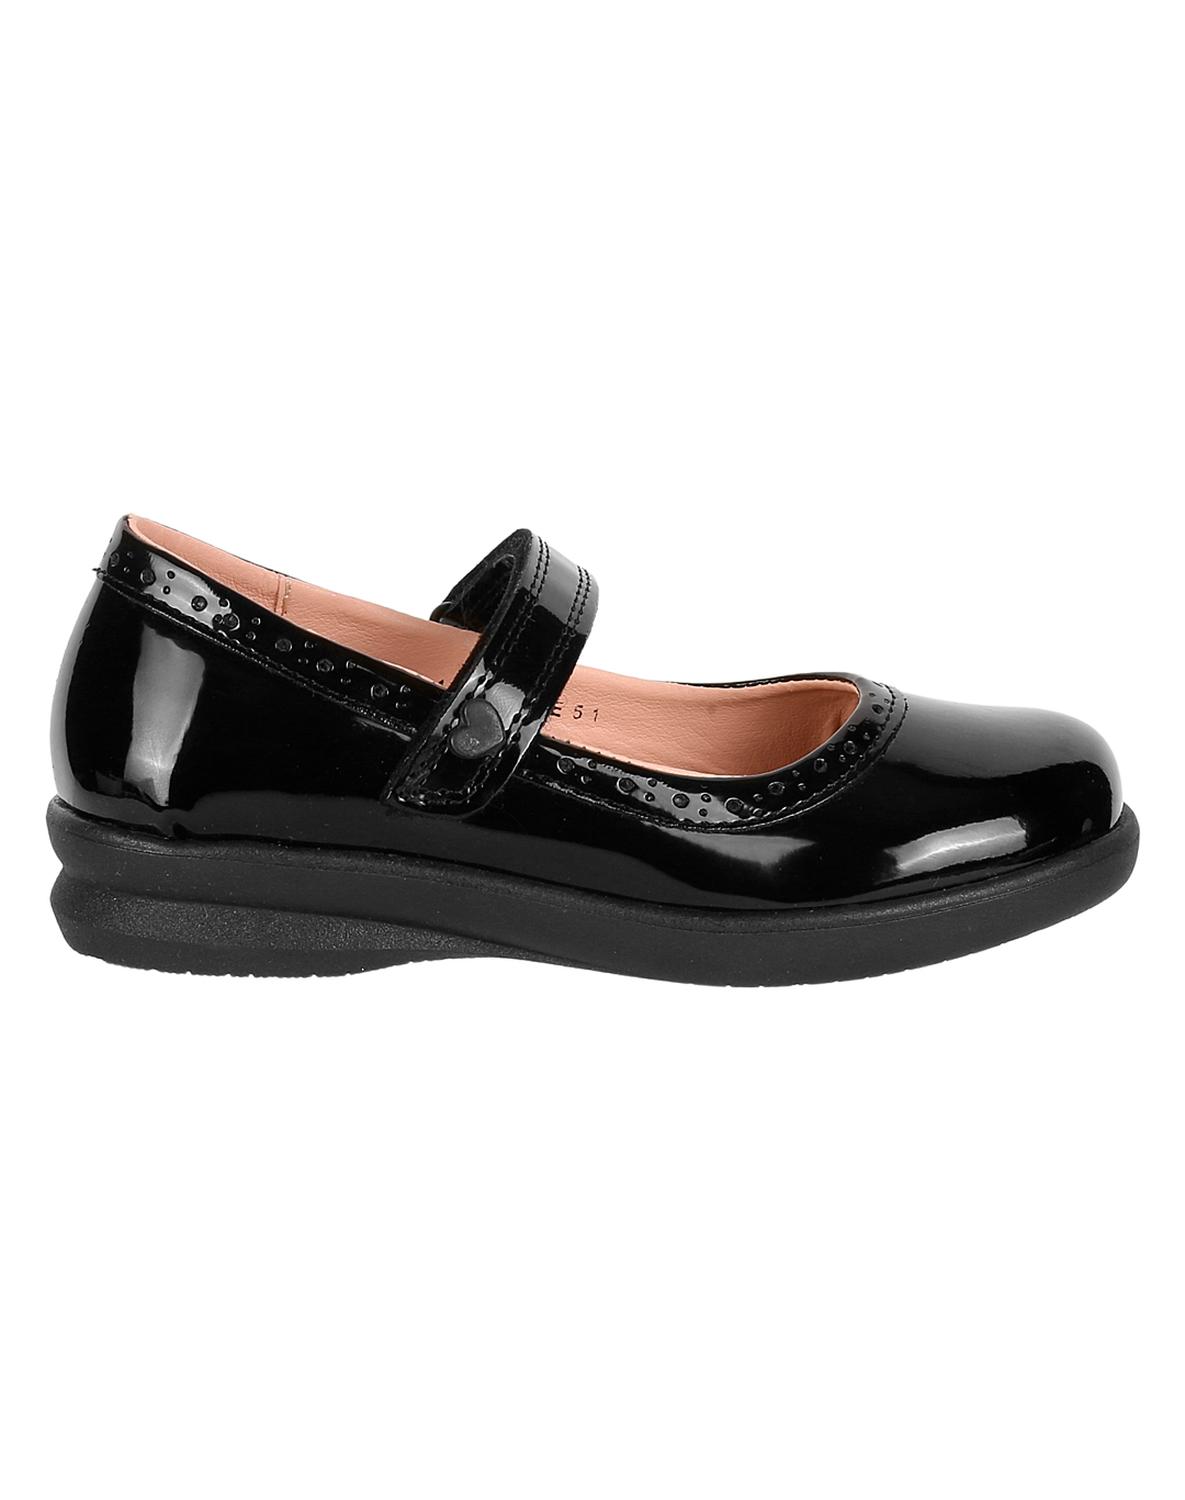 Zapato Escolar Niña Negro Tipo Charol Blasito 10603800